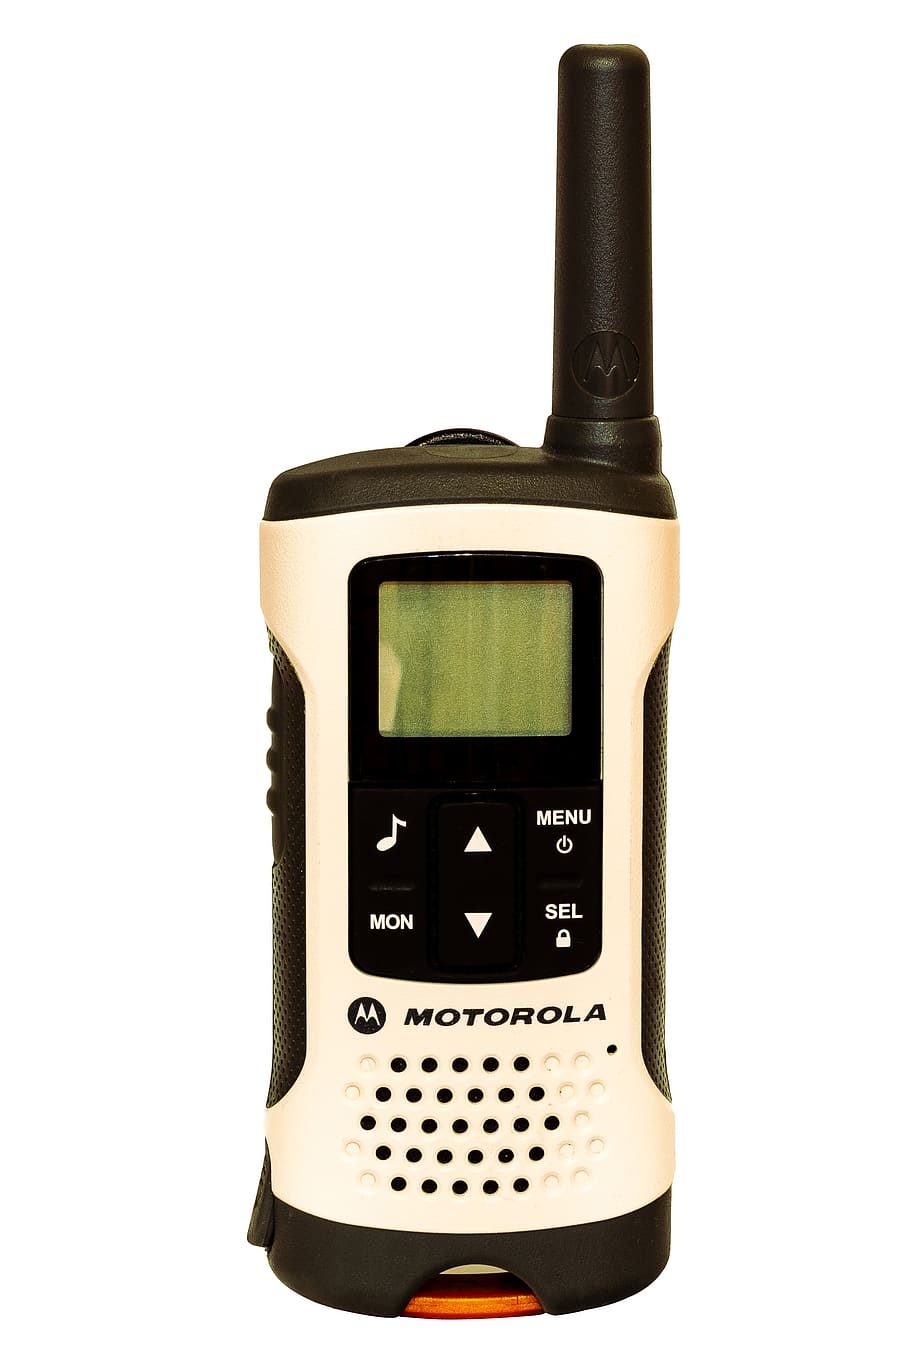 motorola, radio, walkie-talkie, walkie talkie, transmitter, communication, portable, speaker, antenna, phone